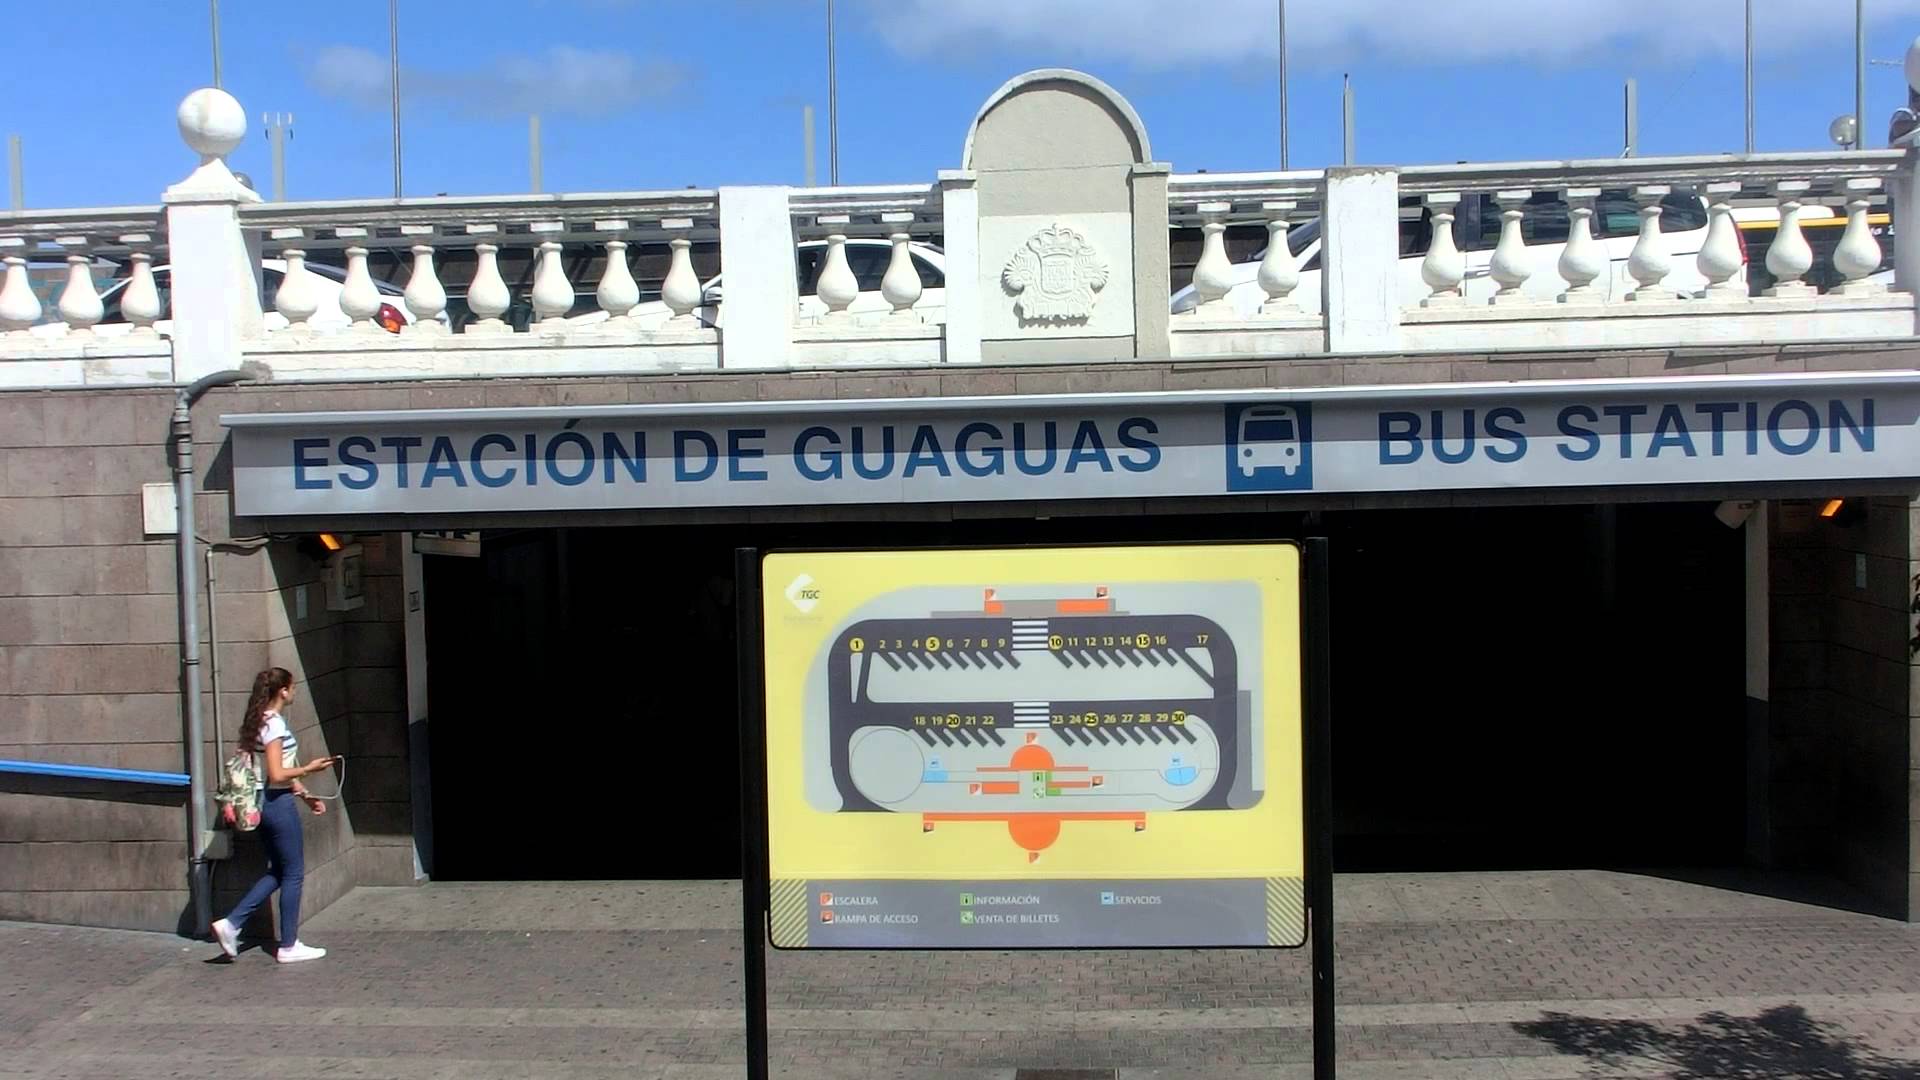 Estación de guaguas de San Telmo en Las Palmas de Gran Canaria